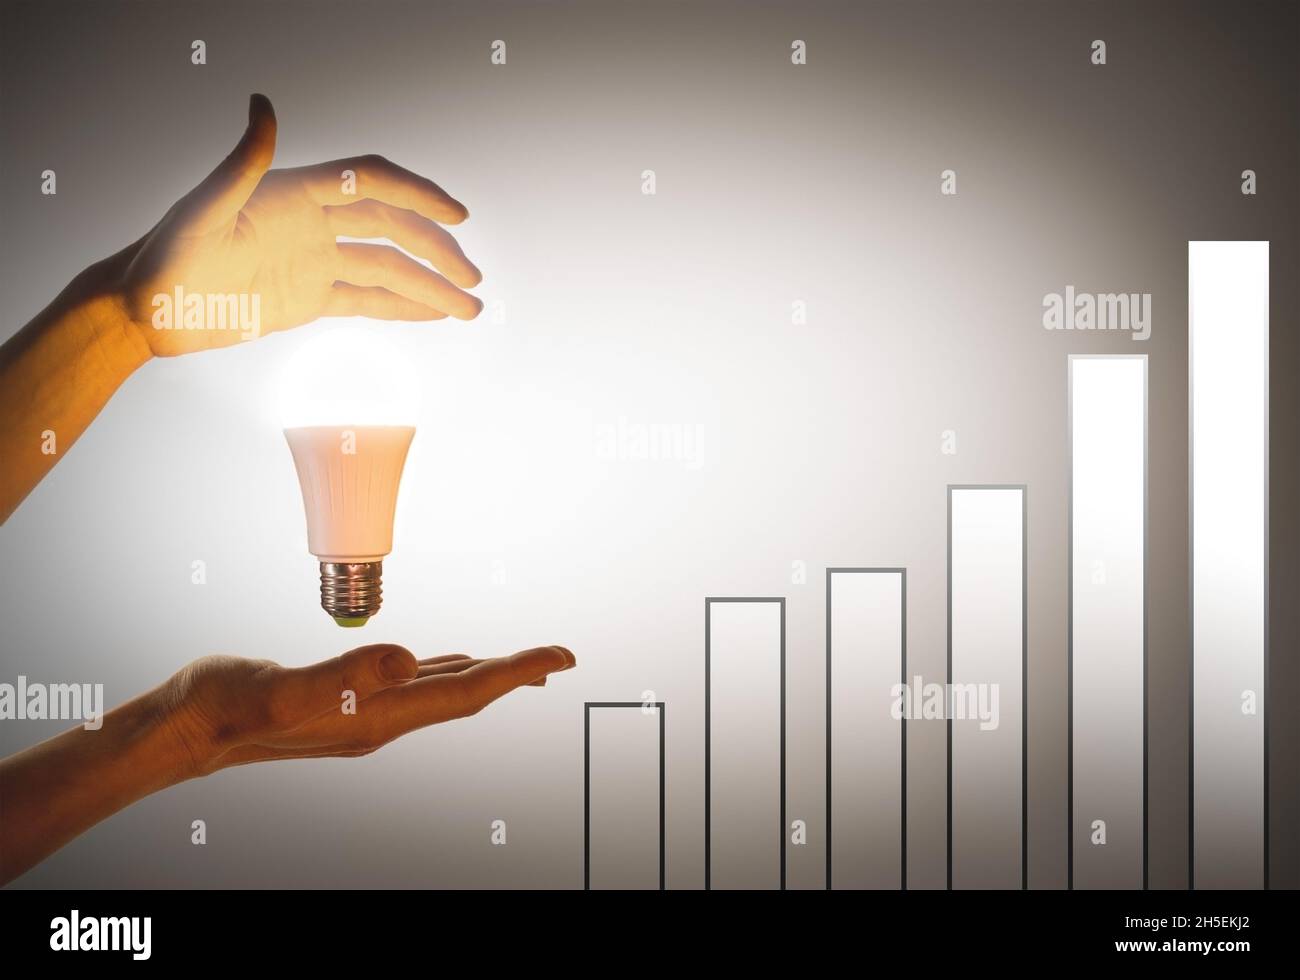 Ampoule à main. Le concept de l'éco-énergie, l'innovation.Graphique de croissance avec les mains éclairées par une ampoule LED. Banque D'Images